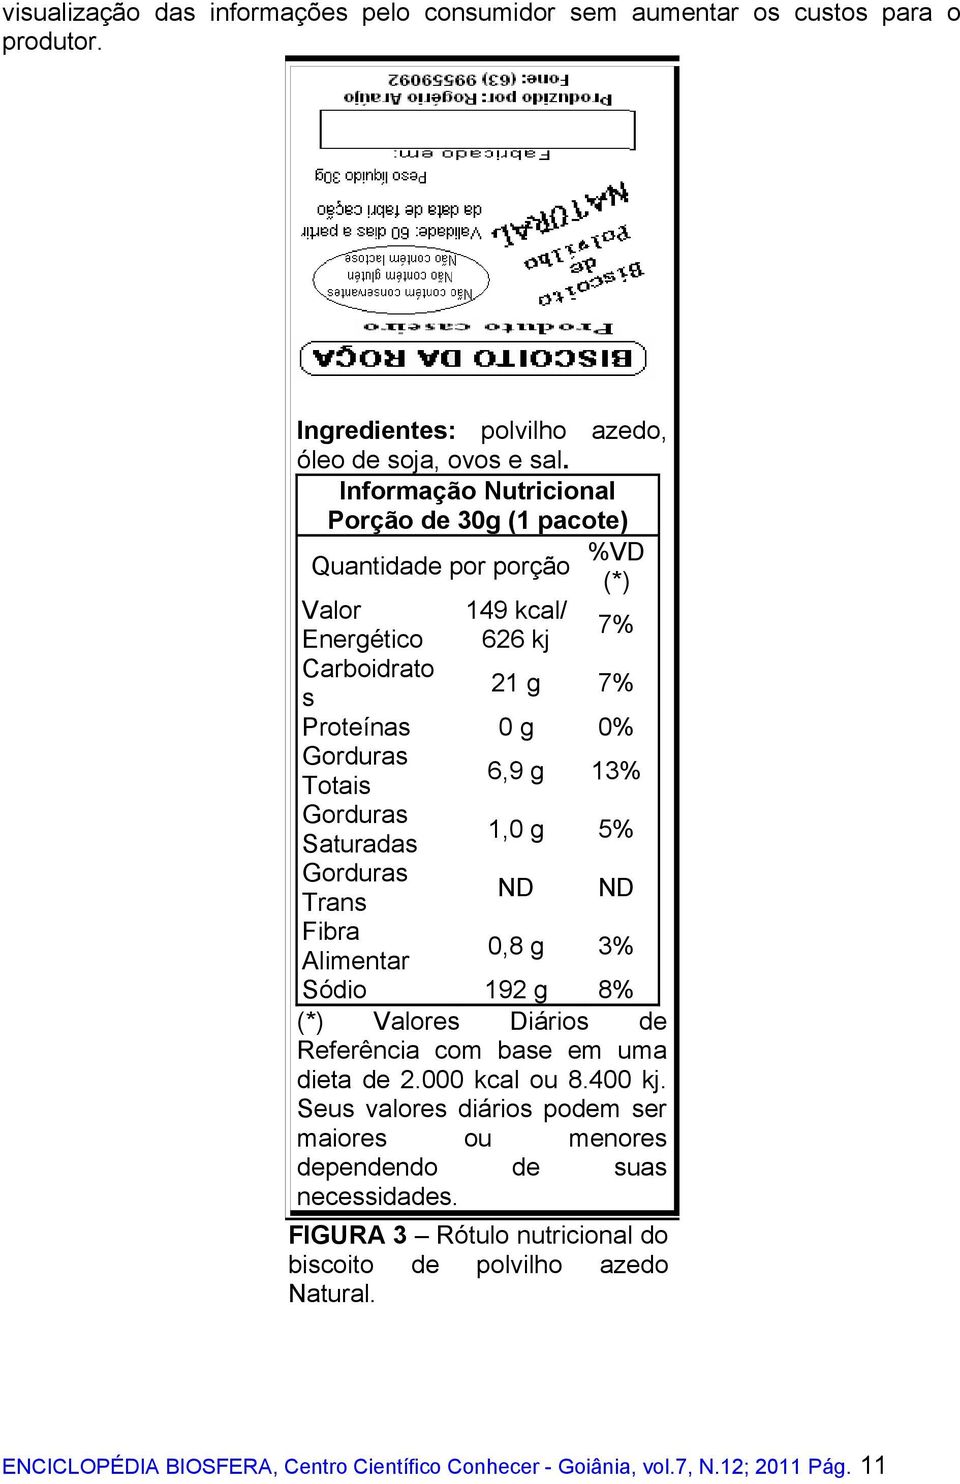 Saturadas 1,0 g 5% Trans ND ND Fibra Alimentar 0,8 g 3% Sódio 192 g 8% (*) Valores Diários de Referência com base em uma dieta de 2.000 kcal ou 8.400 kj.